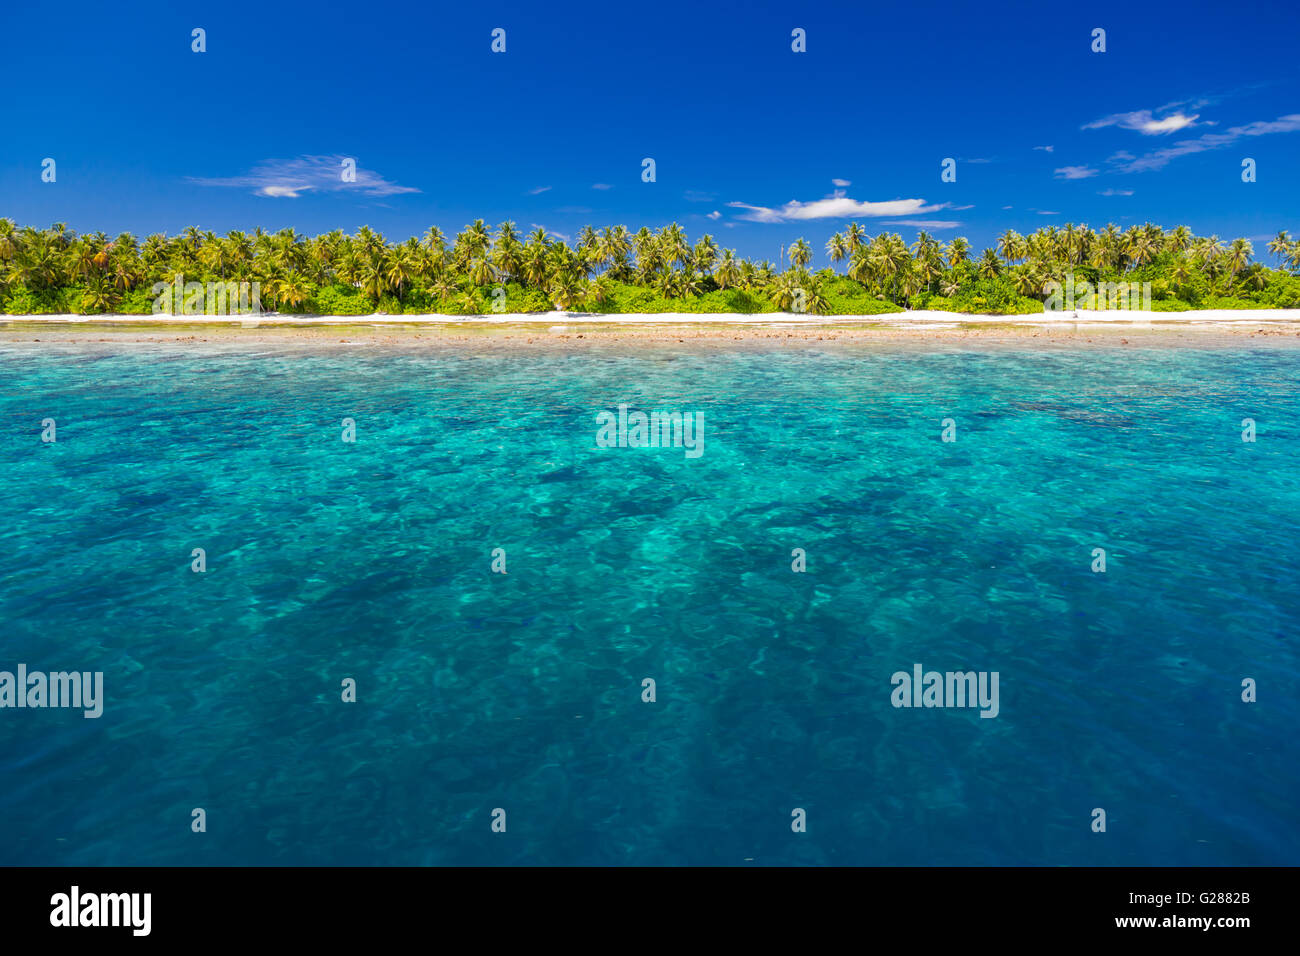 Tropical Beach blanc aux Maldives avec de beaux palmiers et lagon bleu. Concept d'arrière-plan Banque D'Images